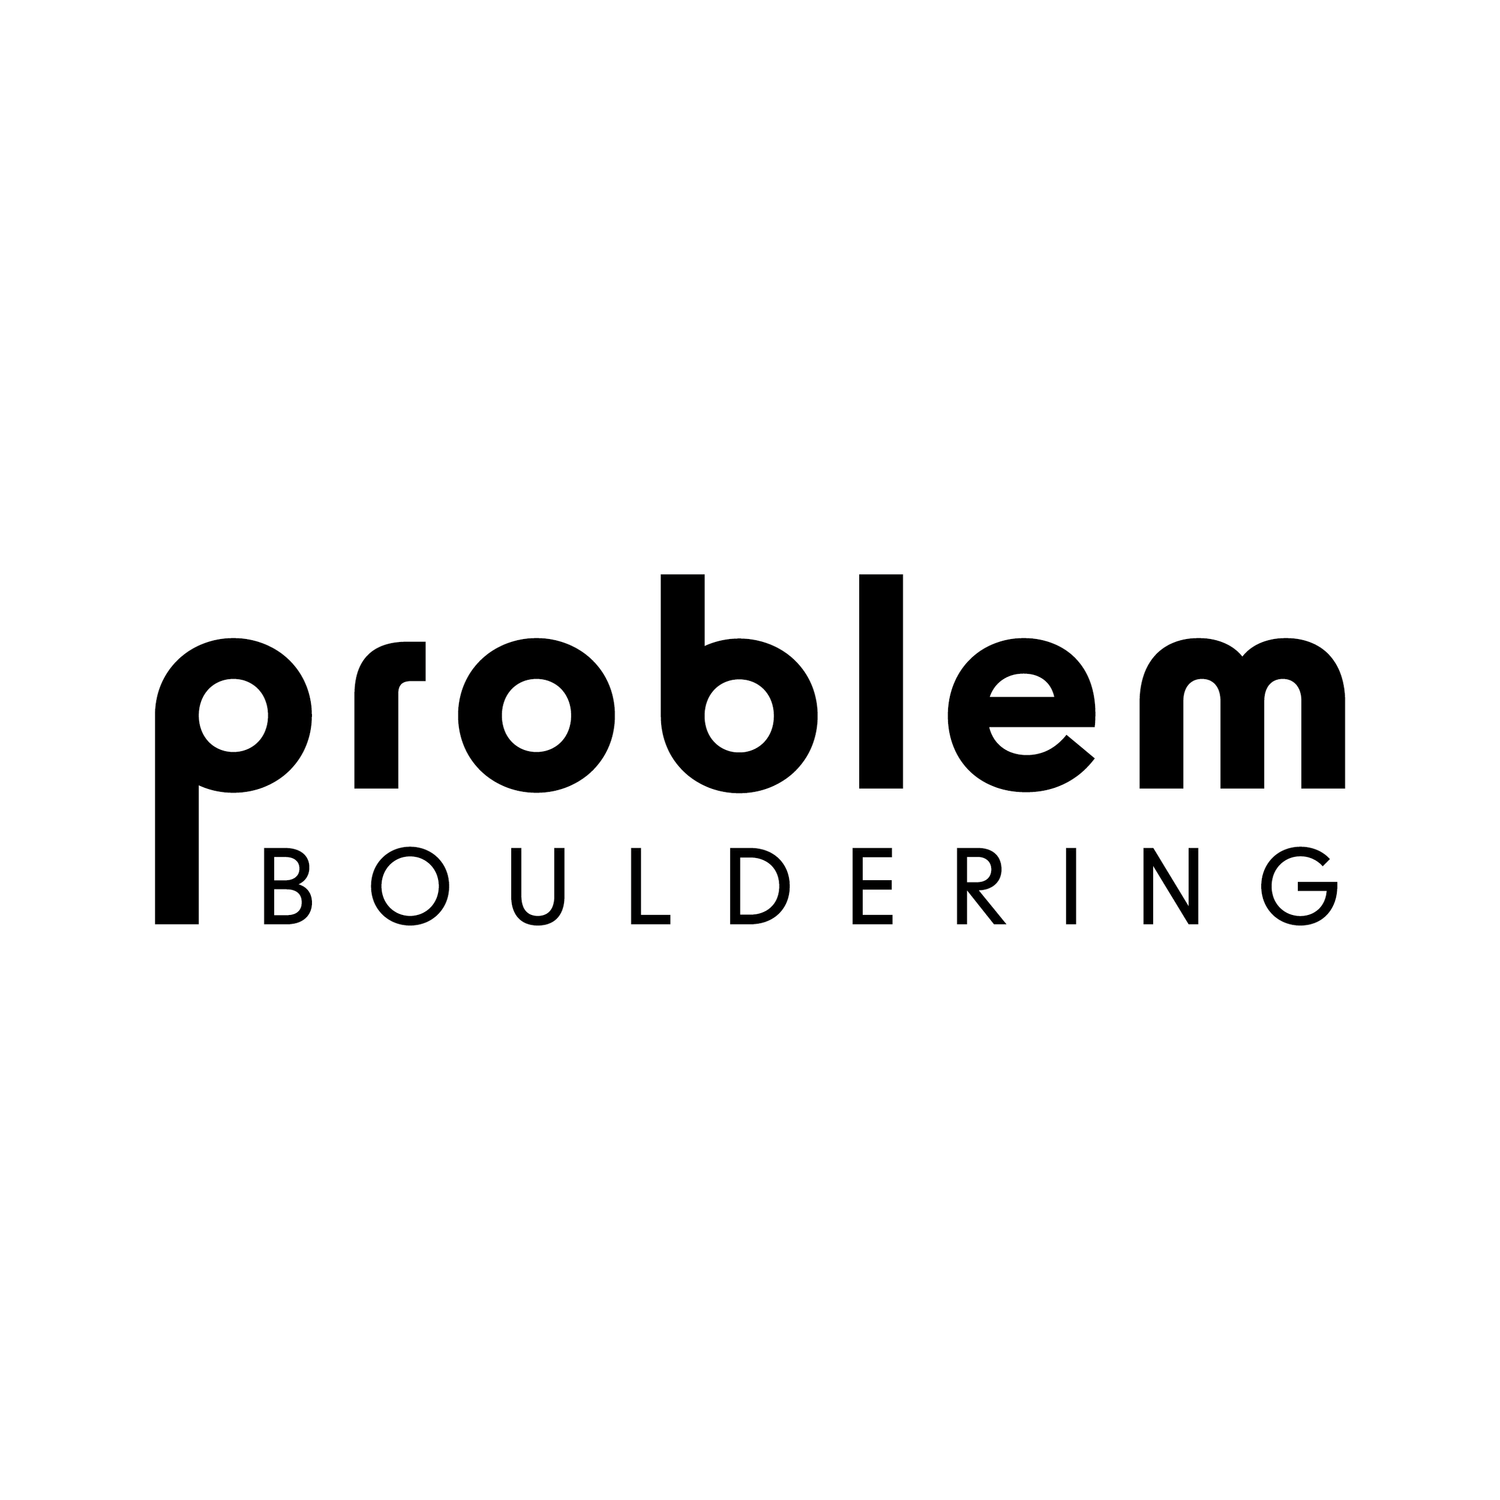 Problem Bouldering